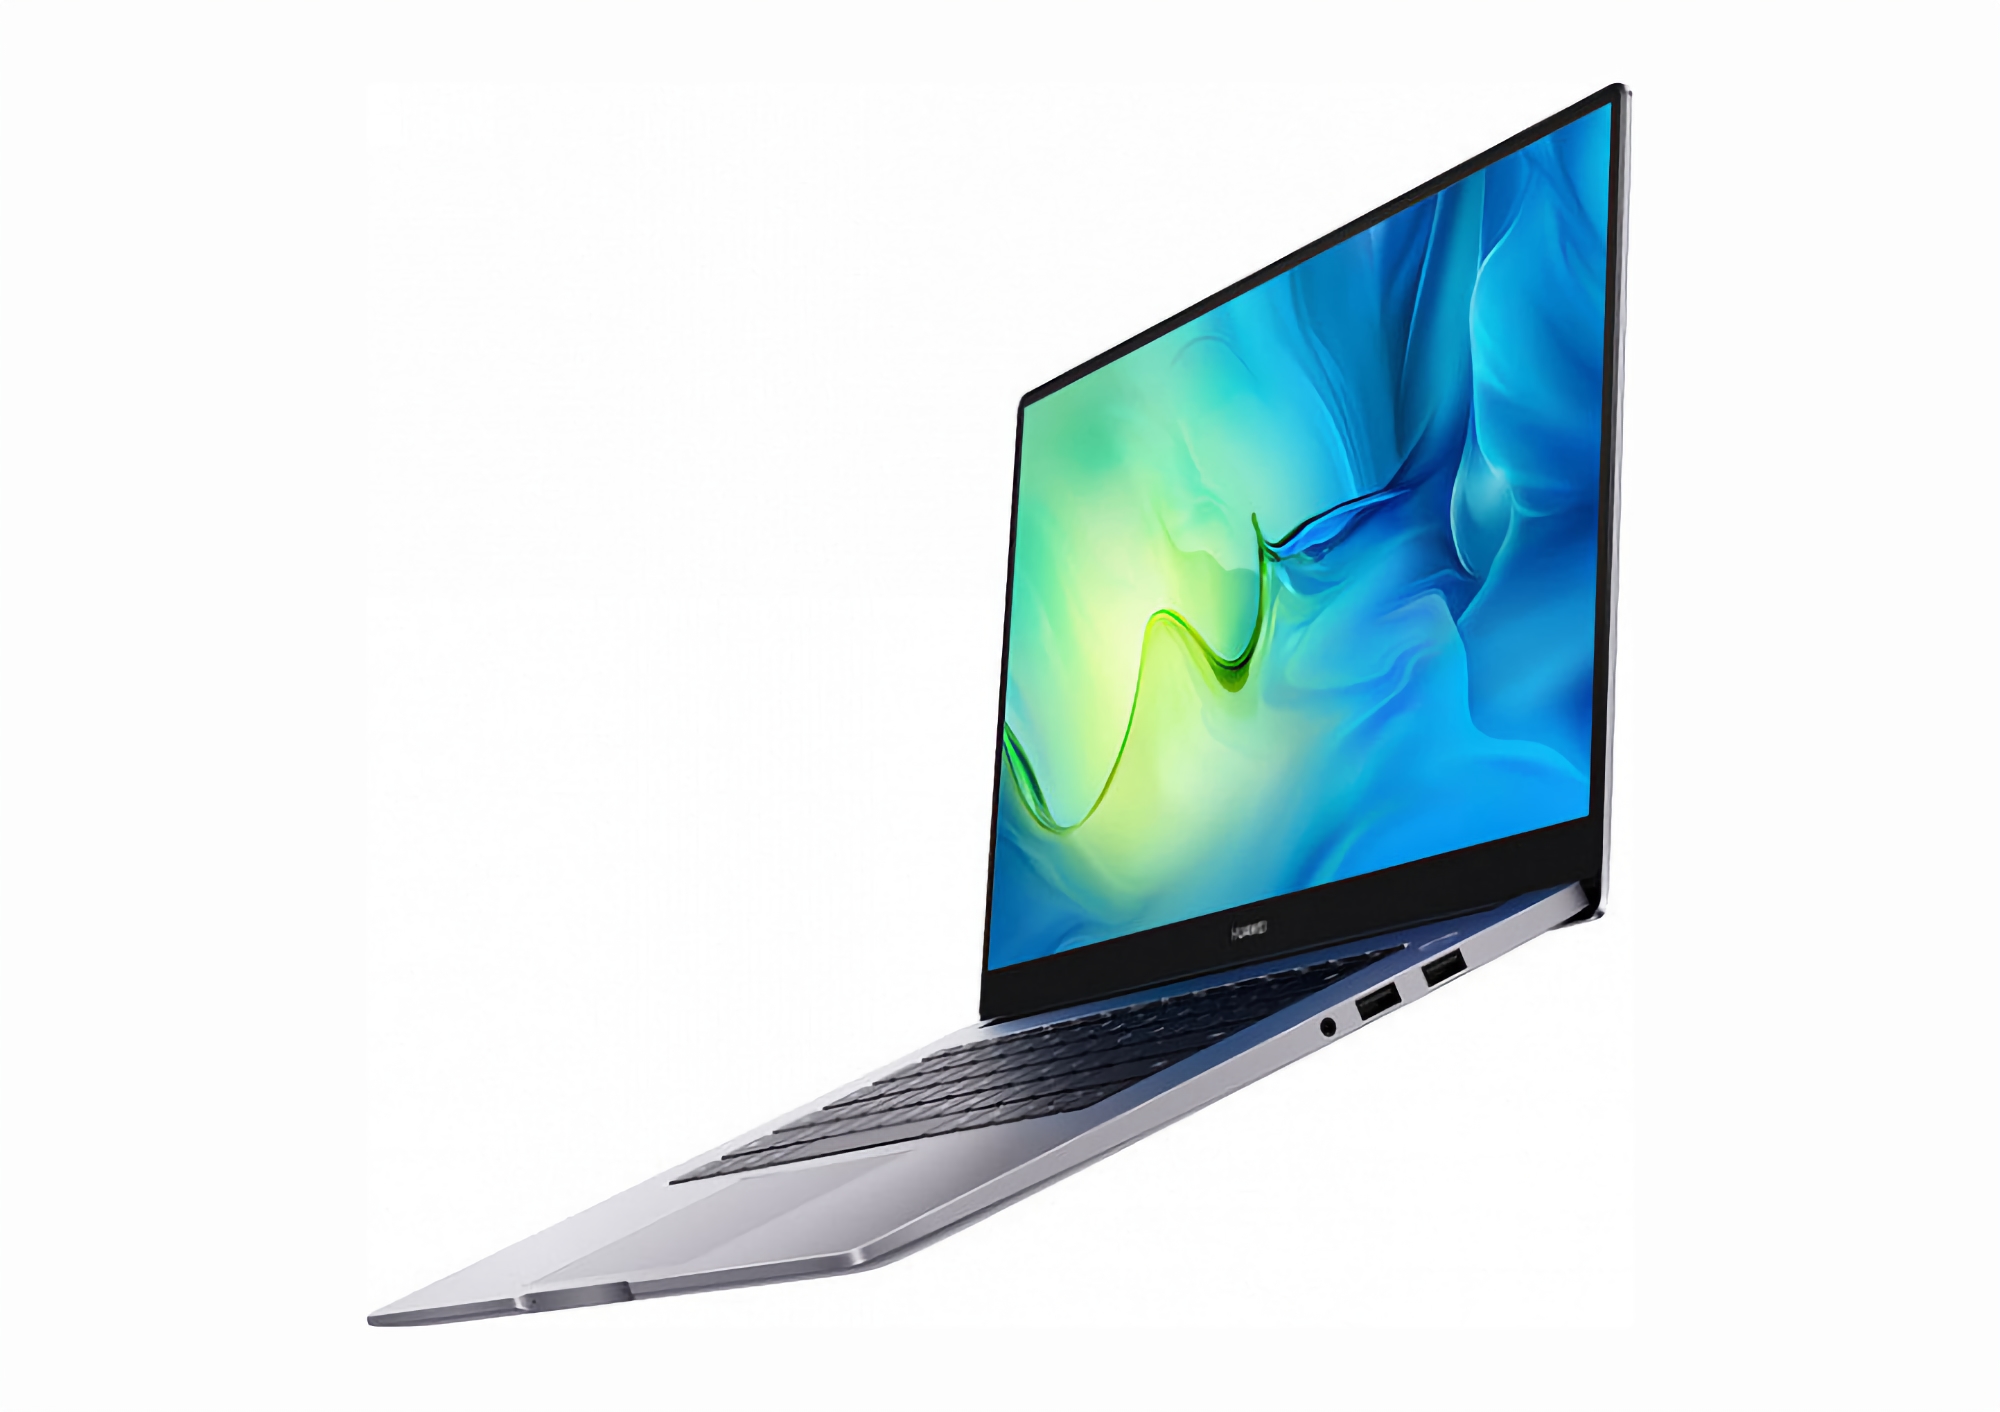 Huawei zaprezentował MateBook D 15 Ryzen Edition: laptop z układami AMD Ryzen 5000 i 16 GB pamięci RAM za 695 USD